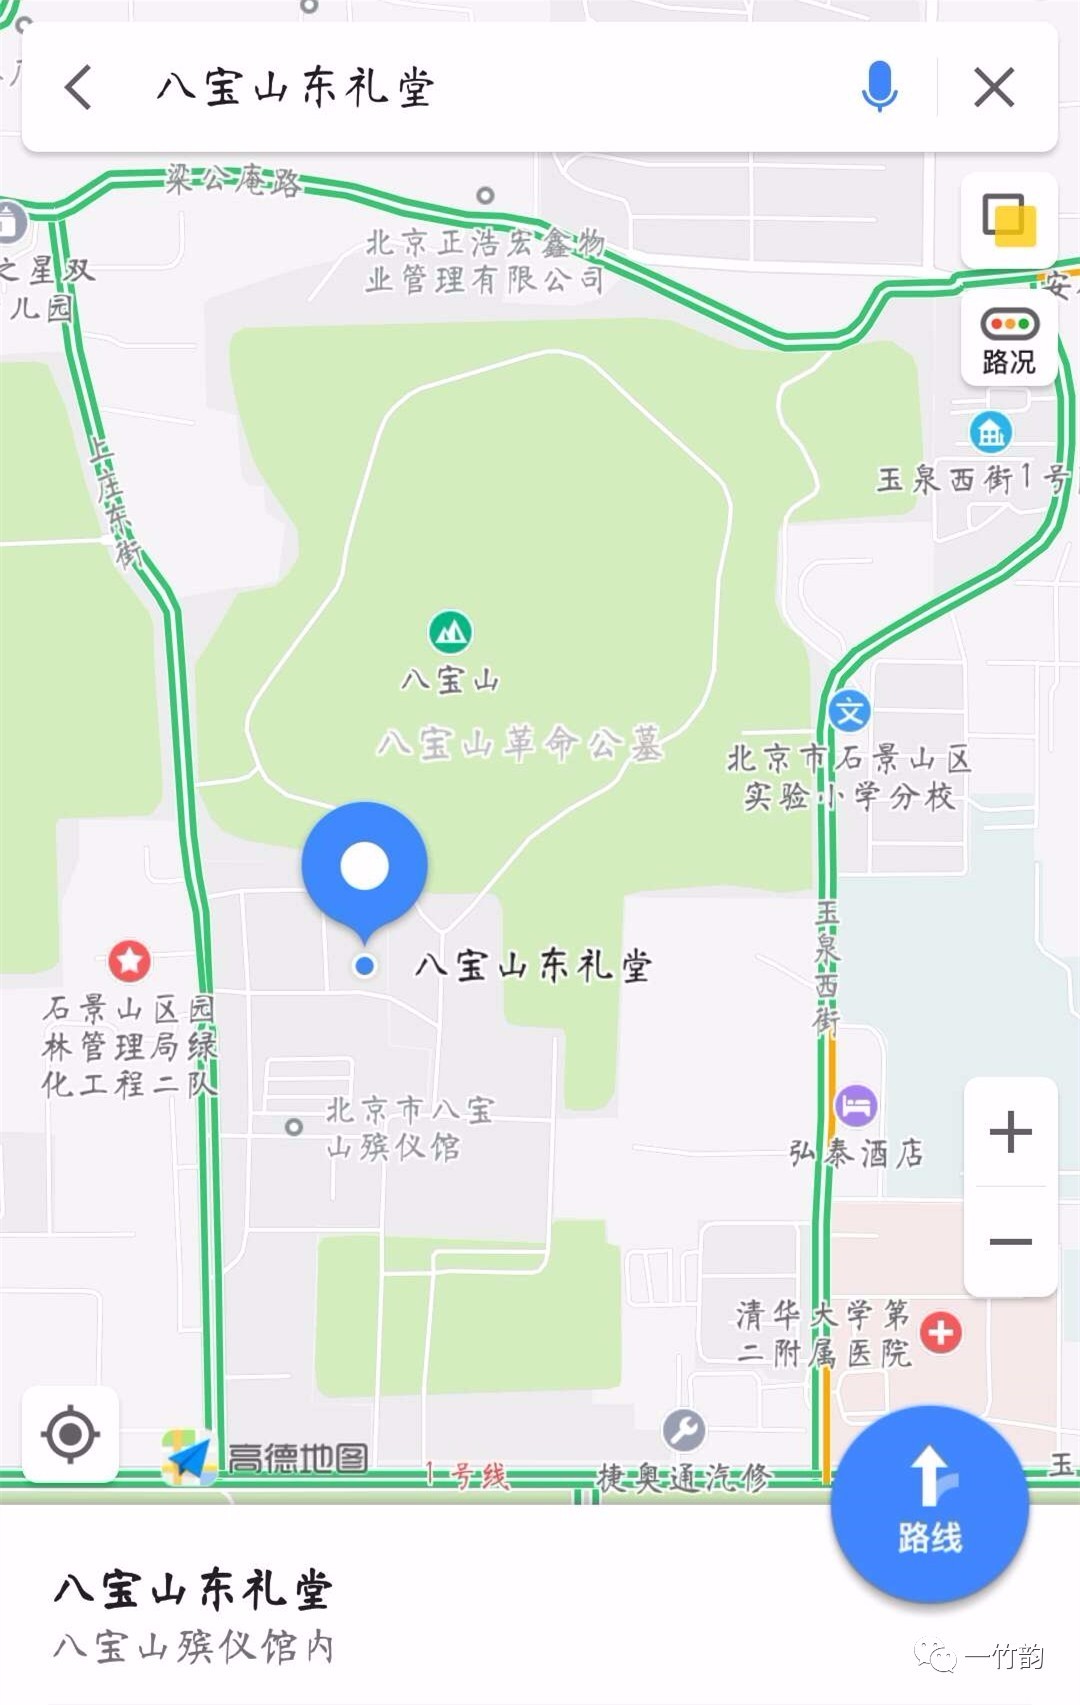 讣告:曹宝荣遗体告别仪式定于2018年1月9日上午8点30分在北京八宝山